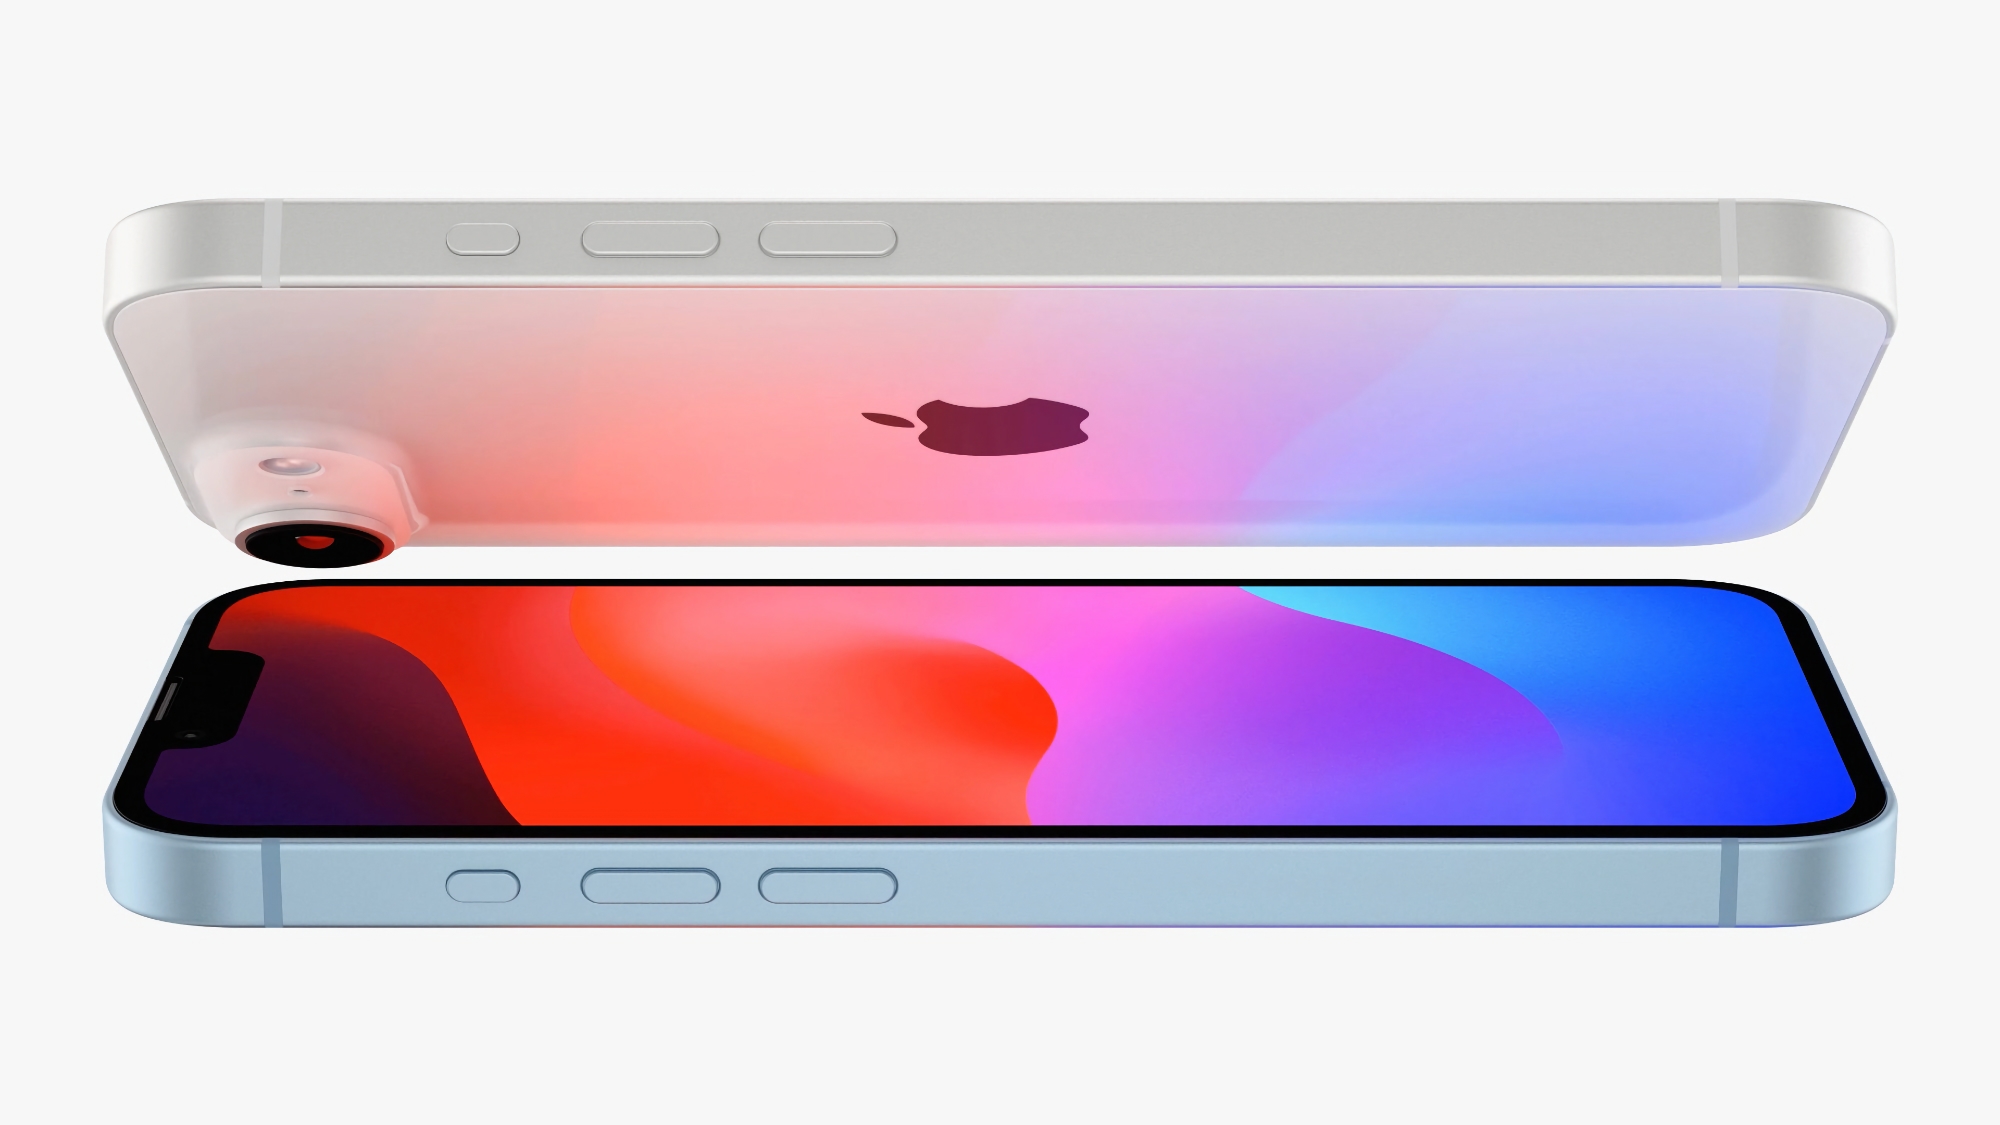 Ryktene: iPhone SE 4 får en 6,1-tommers OLED-skjerm produsert av det kinesiske selskapet BOE